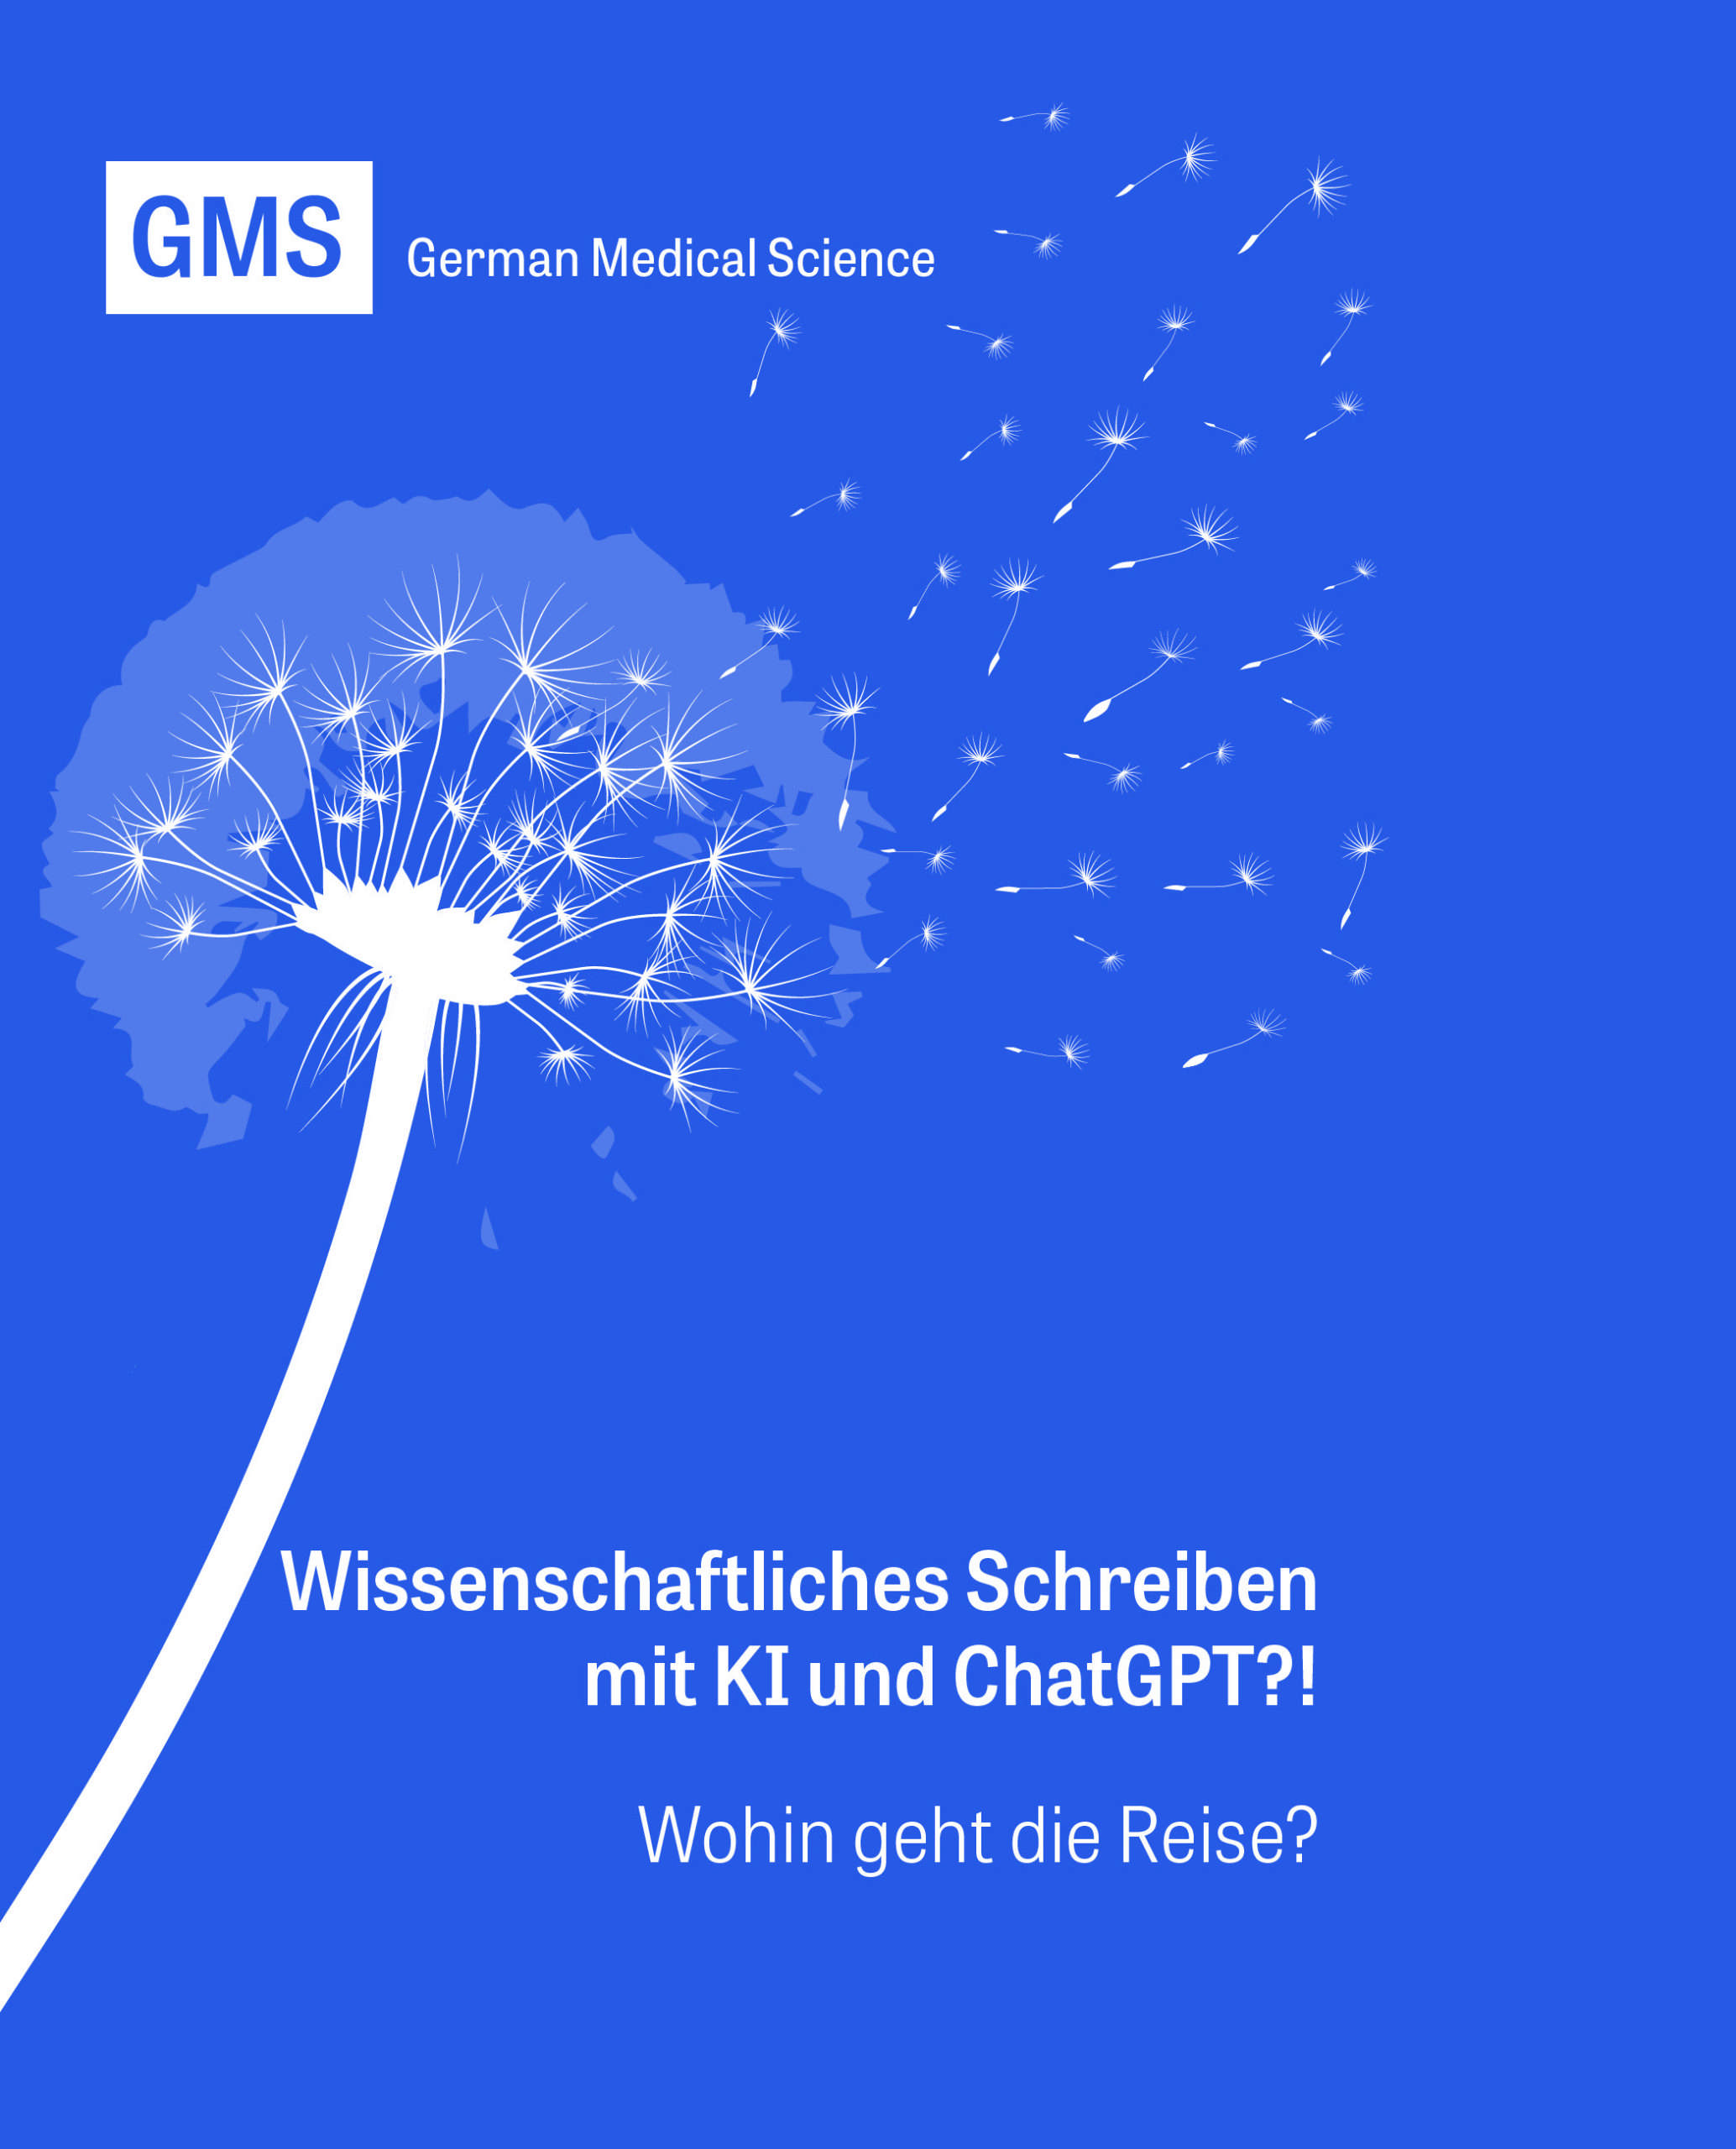 GMS Keyvisual Pusteblume auf blauem Hintergrund, Titel: Wissenschaftliches Schreiben mit KI und ChatGPT? Untertitel: Wohin geht die Reise?